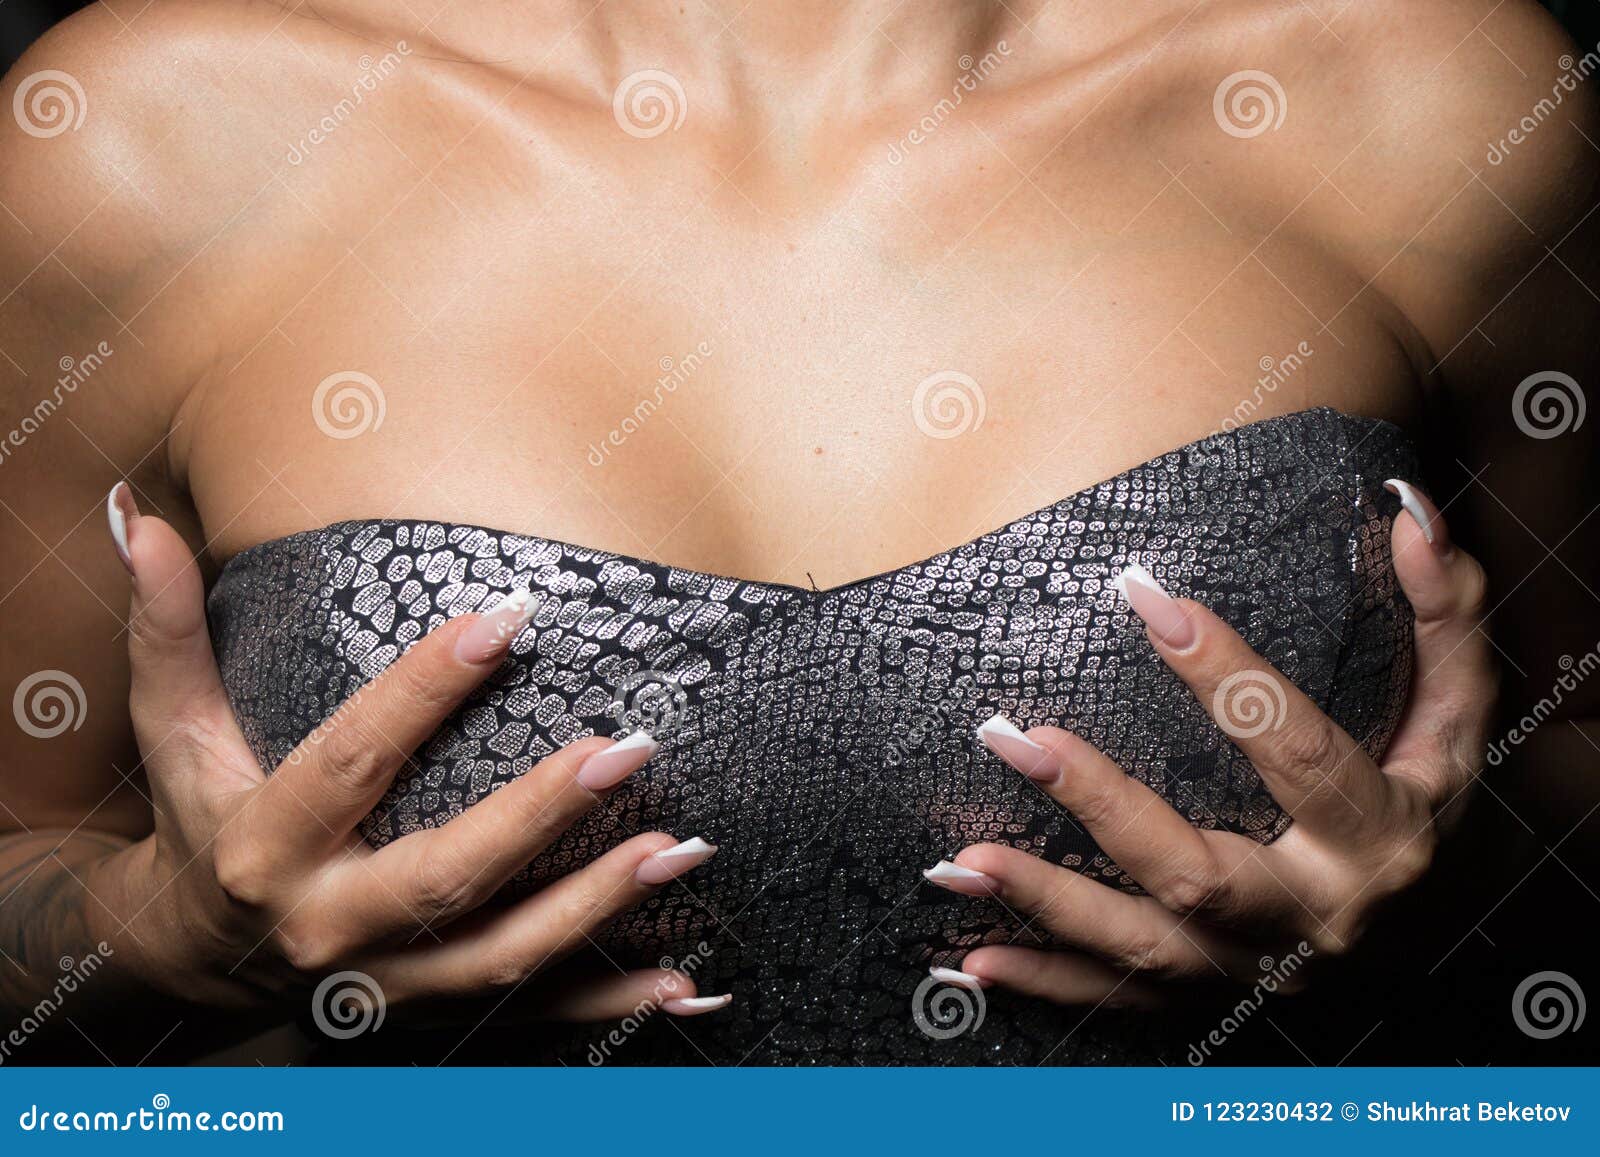 мужчины с женскими грудями фото фото 81